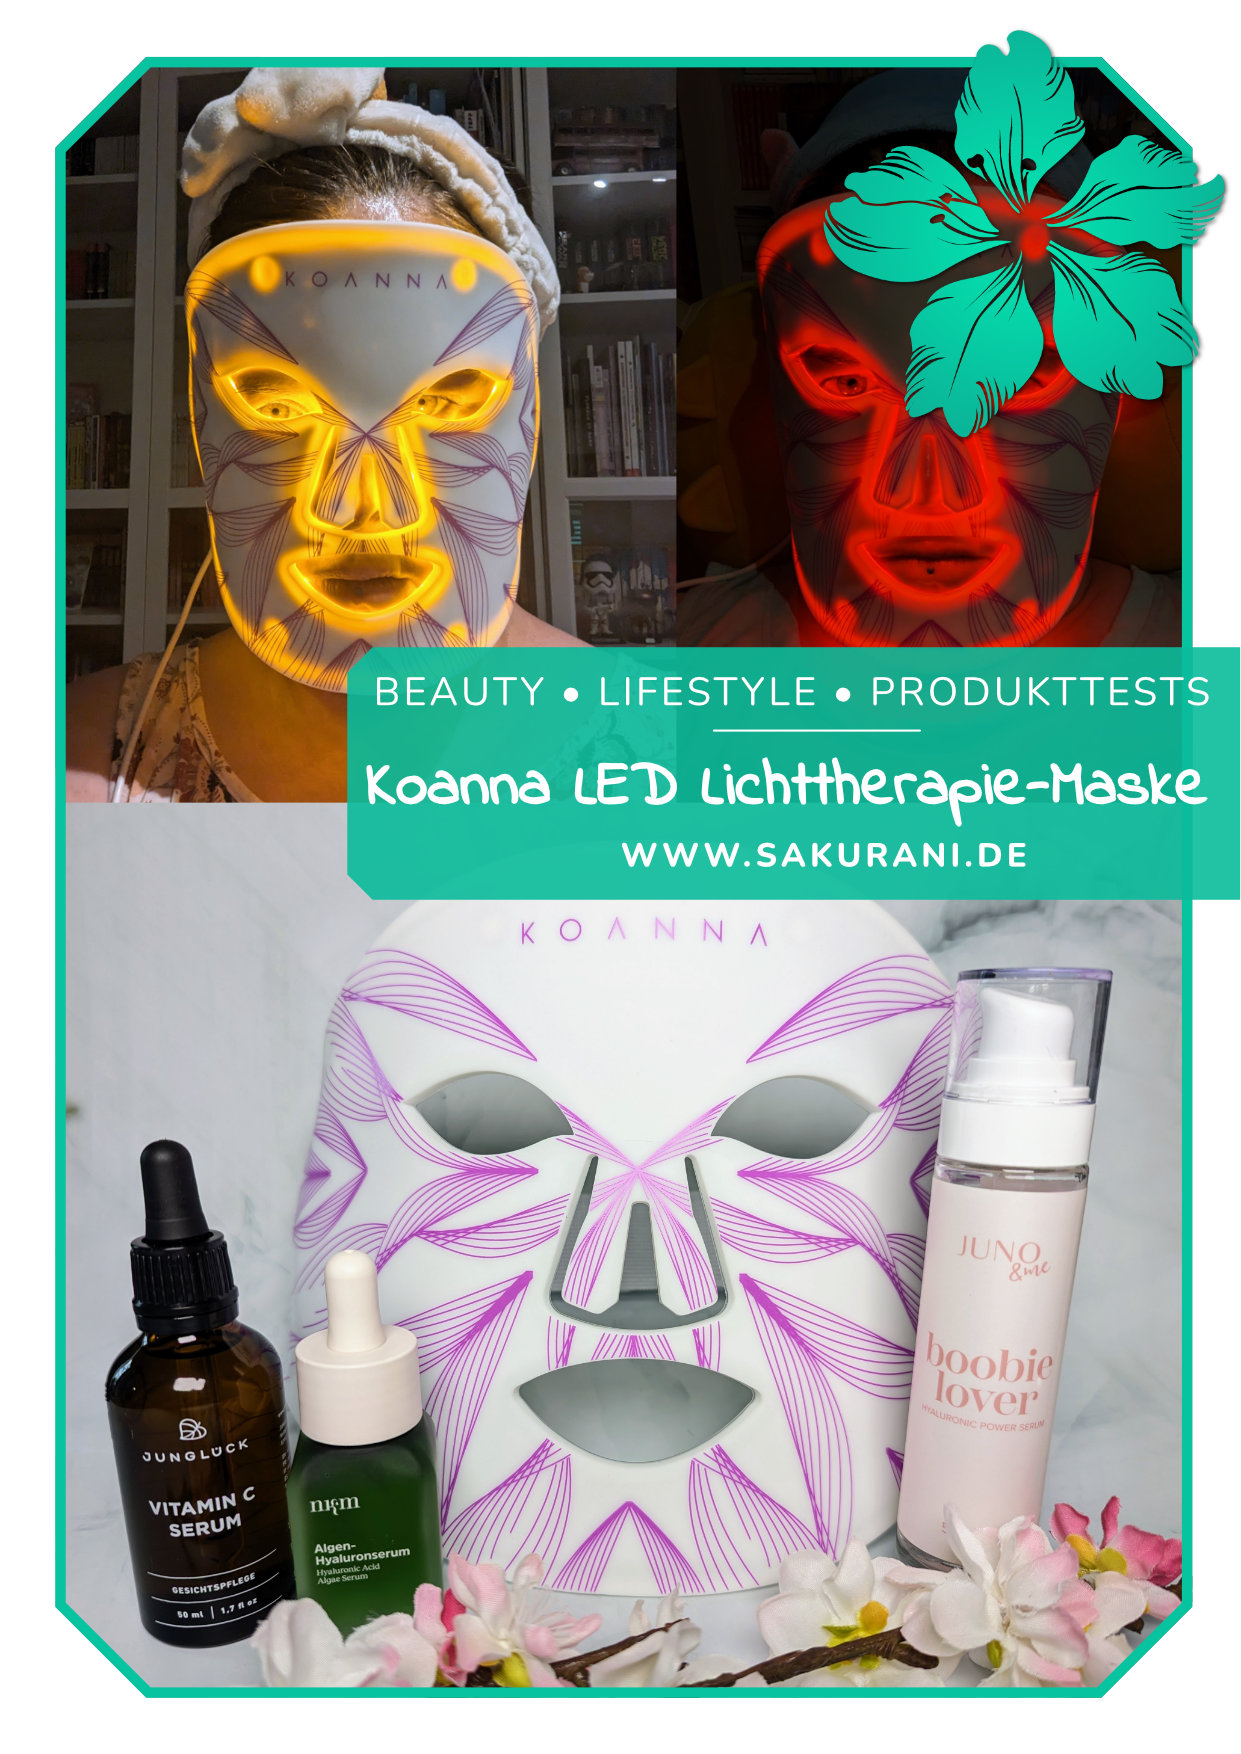 Blogbeitrag zur LED Lichttherapie-Maske von Koanna™ auf sakurani.de